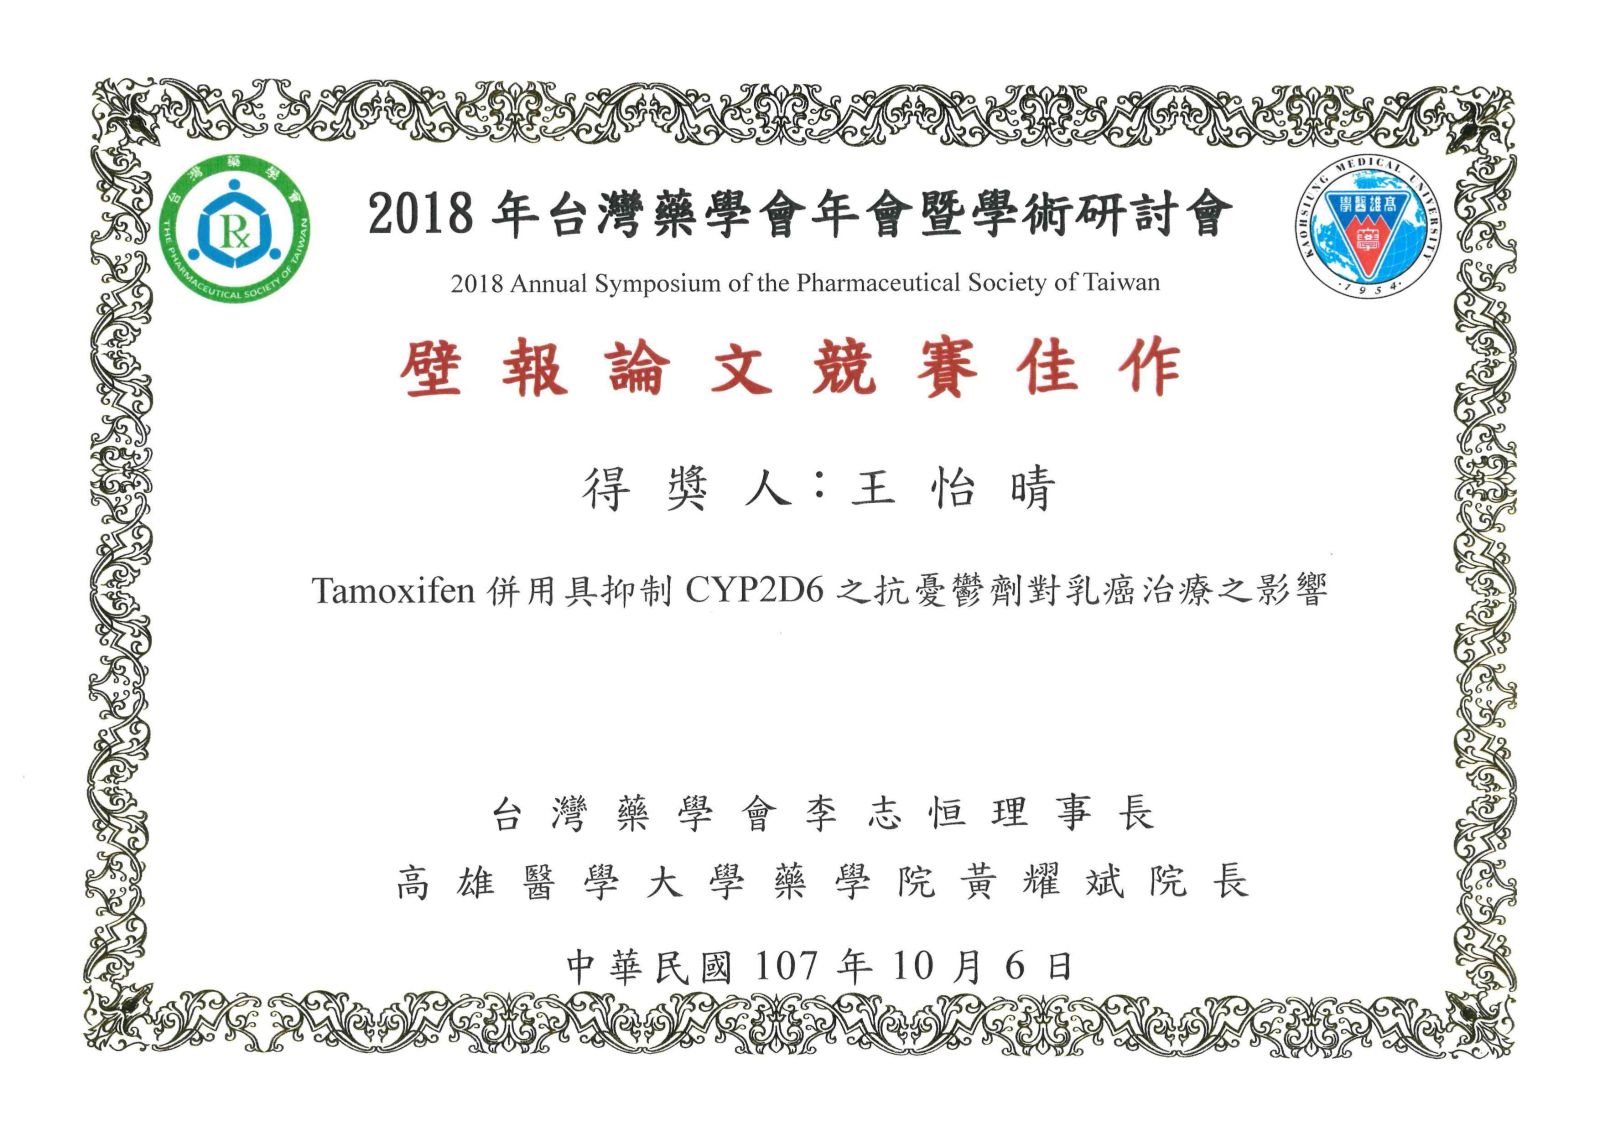 王怡晴藥師以「Tamoxifen併用具抑制CYP2D6之抗憂鬱劑對乳癌治療之影響」榮獲107年台灣藥學會年會暨學術研討會壁報論文競賽佳作